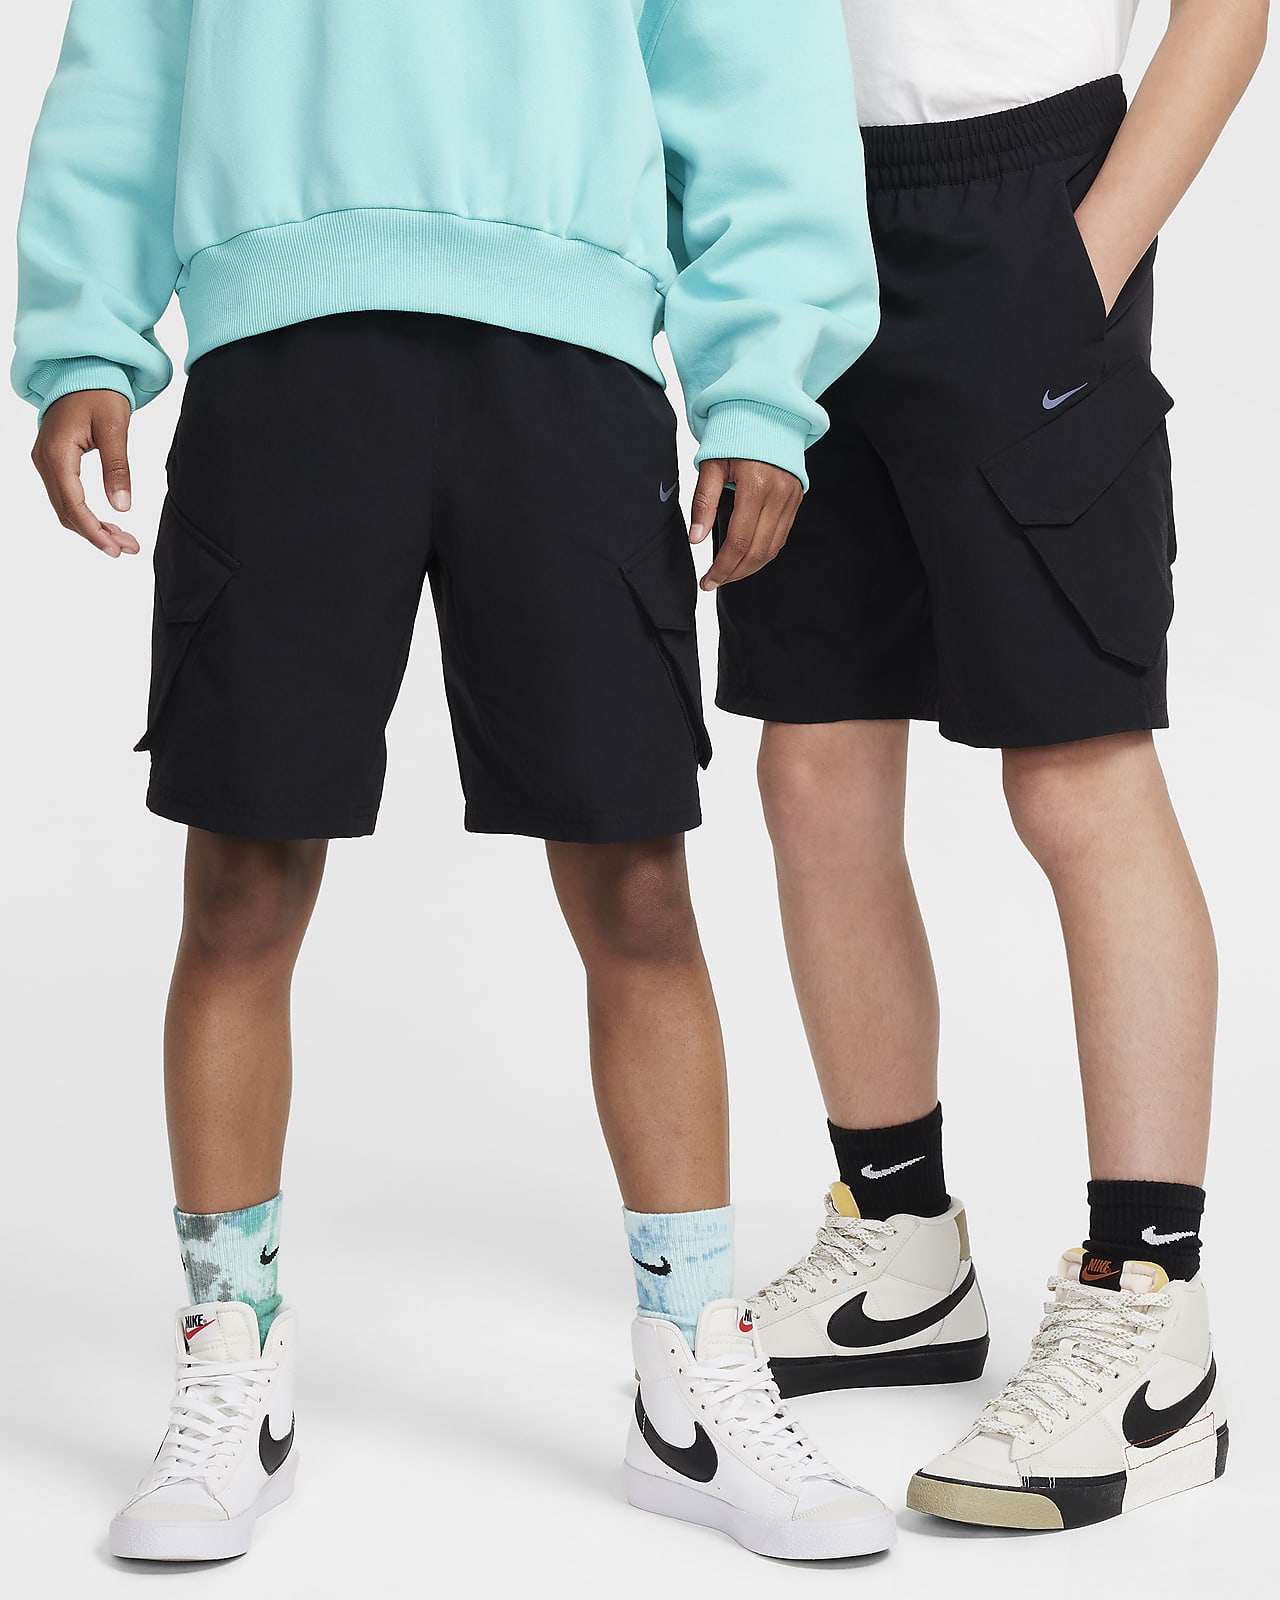 Nike Sportswear City Utility Big Kids' Cargo Shorts